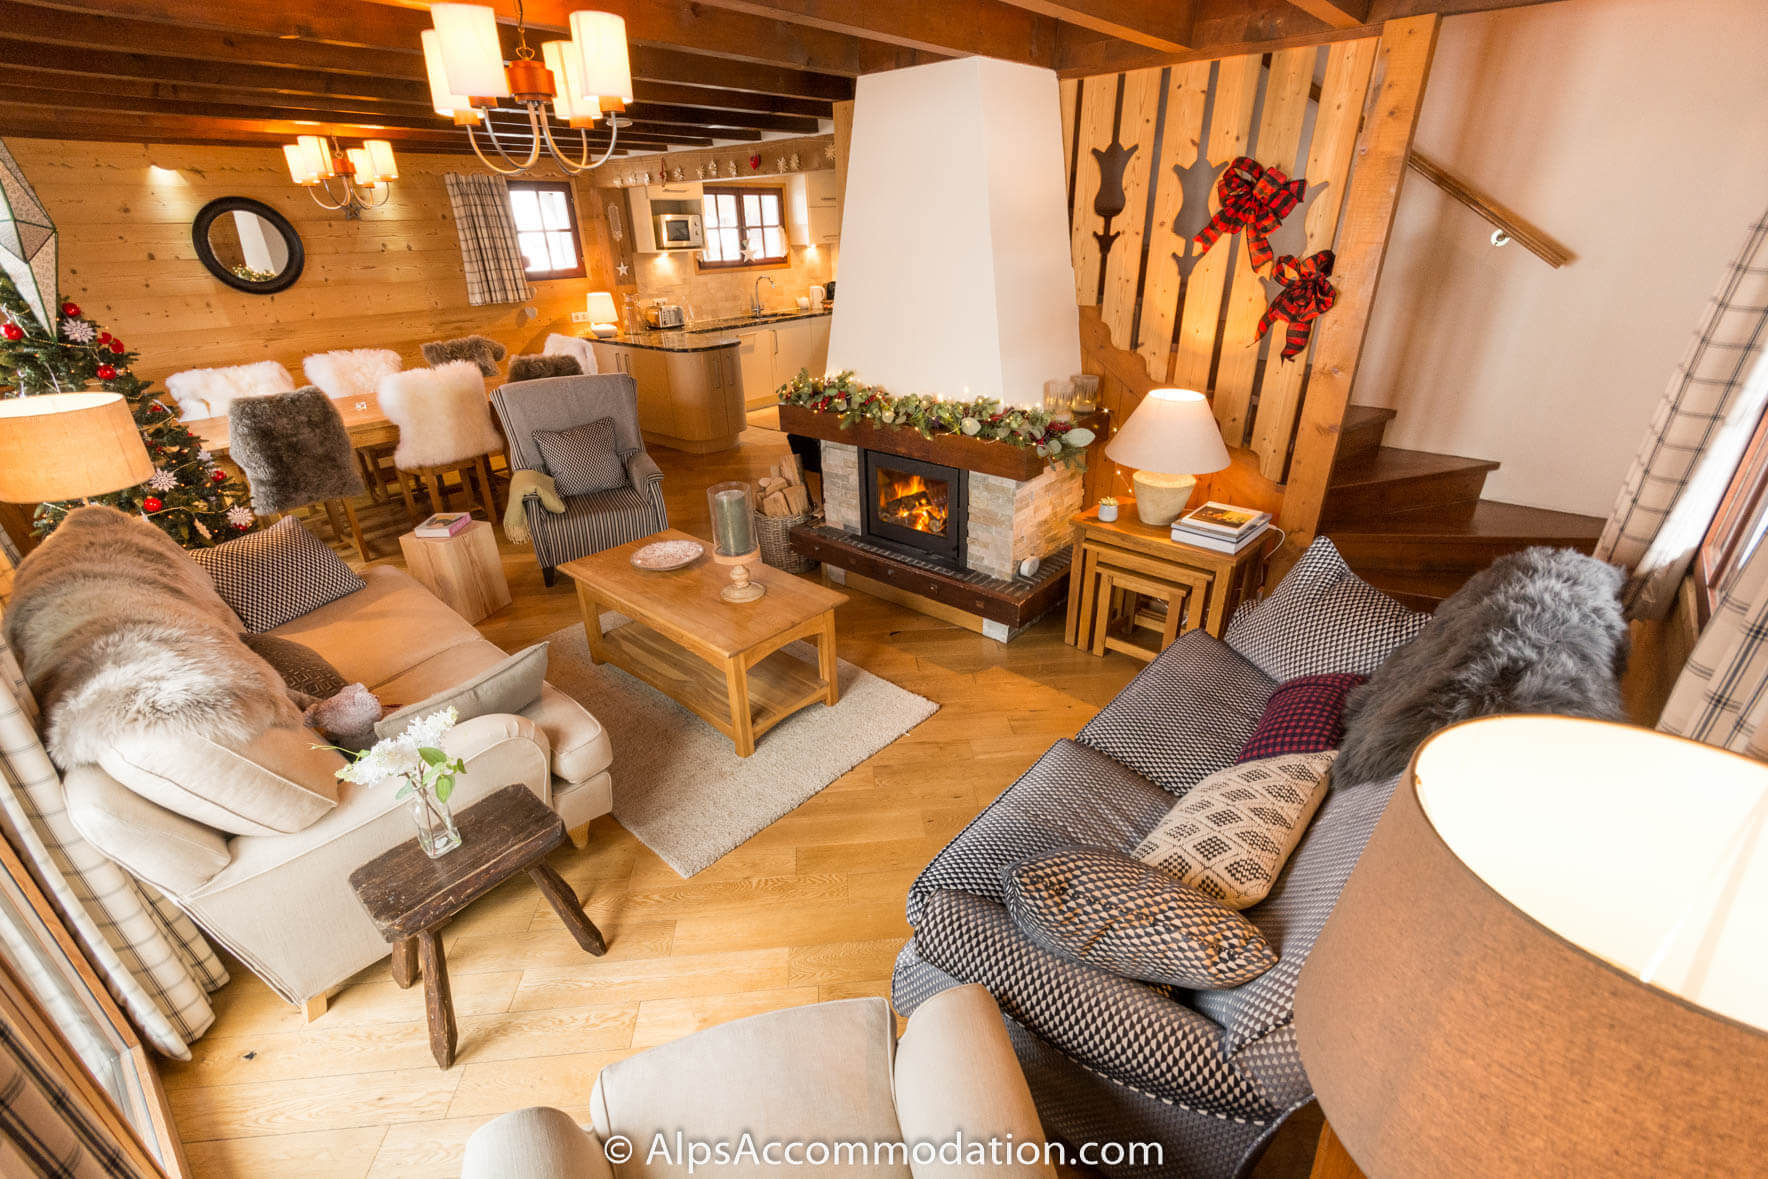 Chalet Étoile Morillon - Le salon dispose de canapés confortables et d'un feu de bois chaleureux